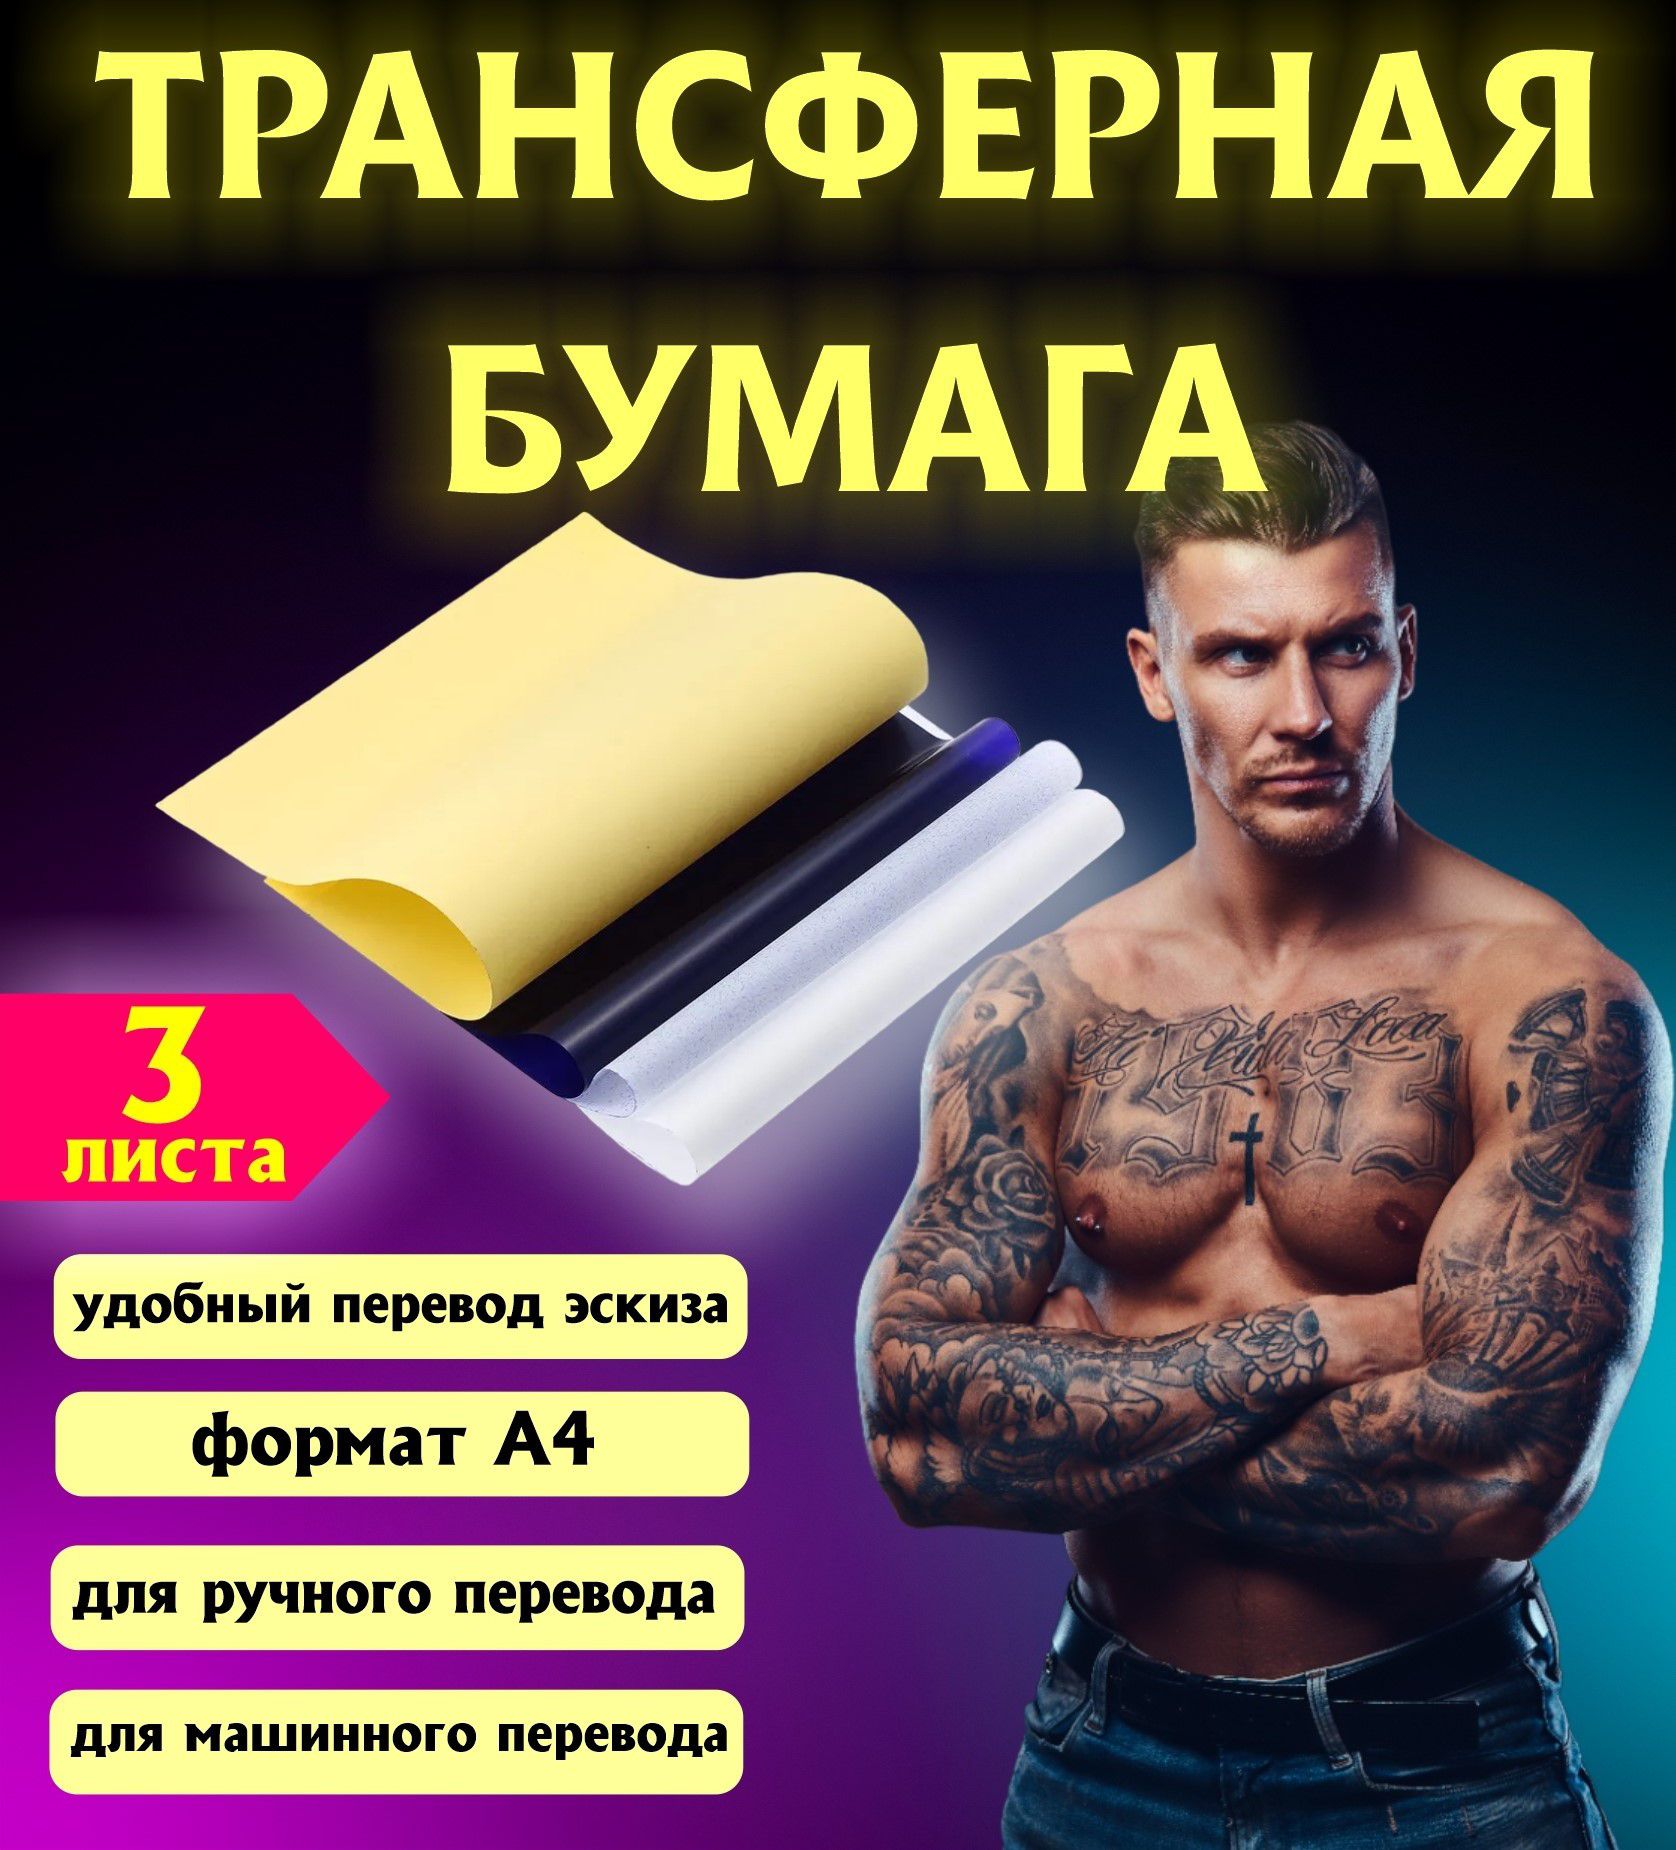 Фото тату с переводом на русский - лучшие идеи и дизайны для вашего татуировочного искусства